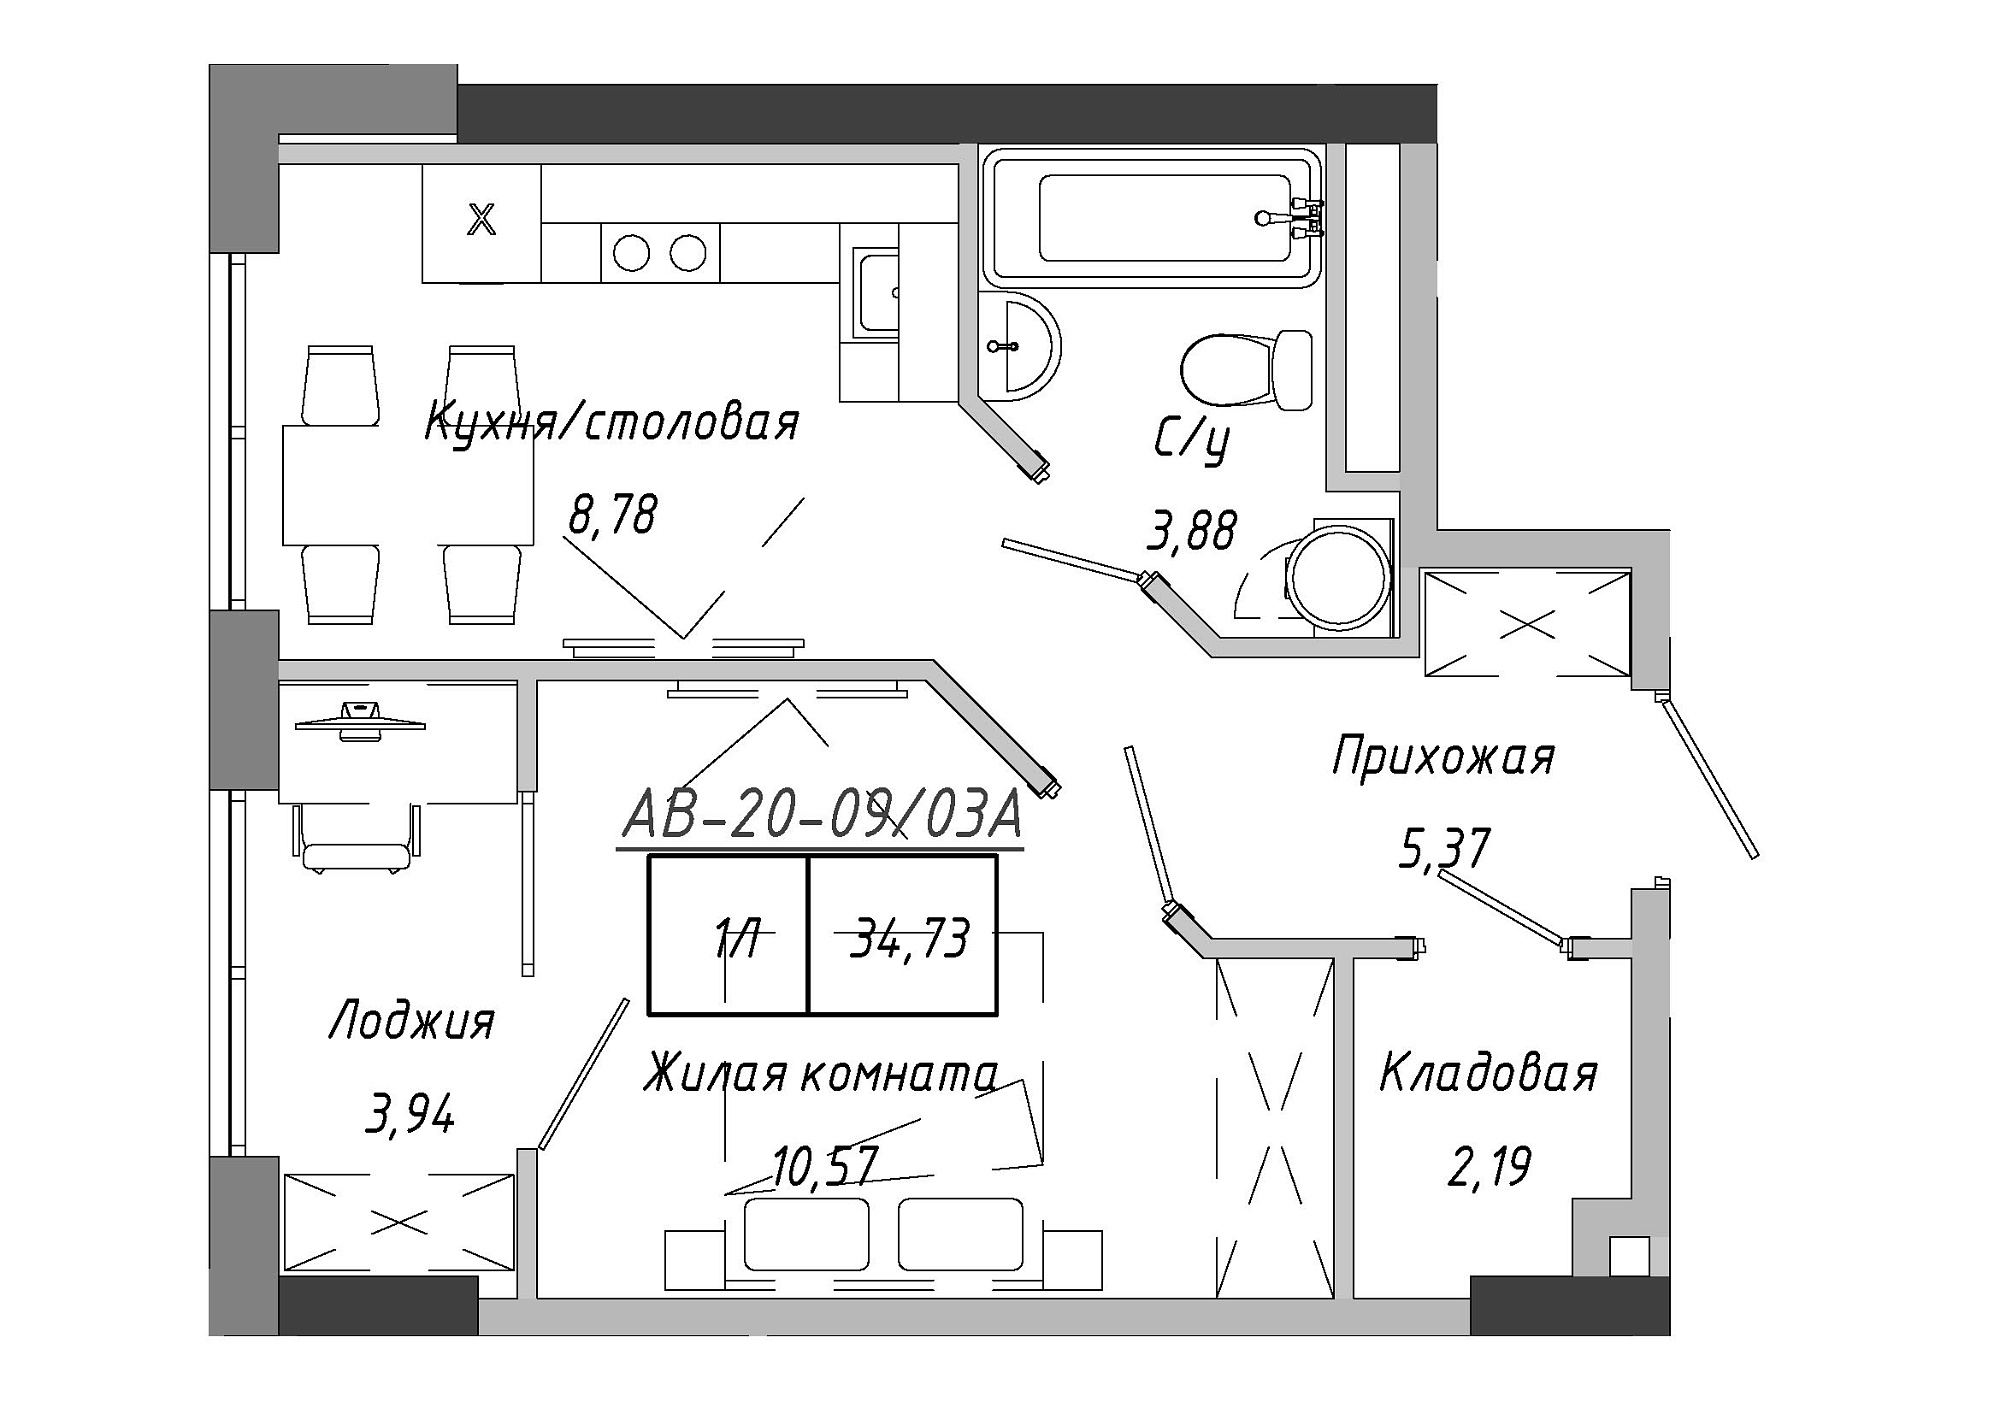 Планування 1-к квартира площею 35.26м2, AB-20-09/0003а.